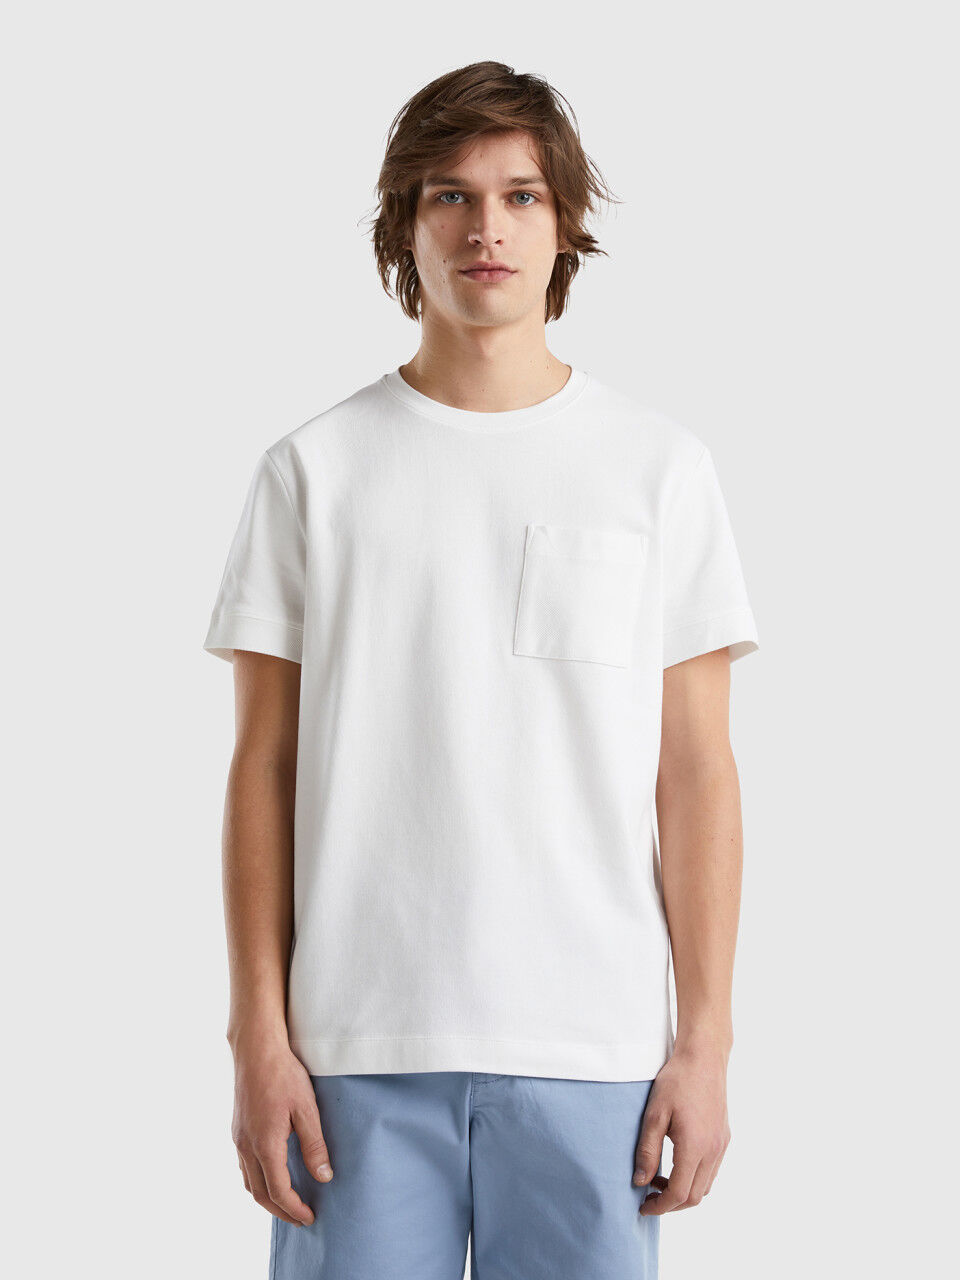 Shirt aus 100% Baumwolle mit kleiner Tasche